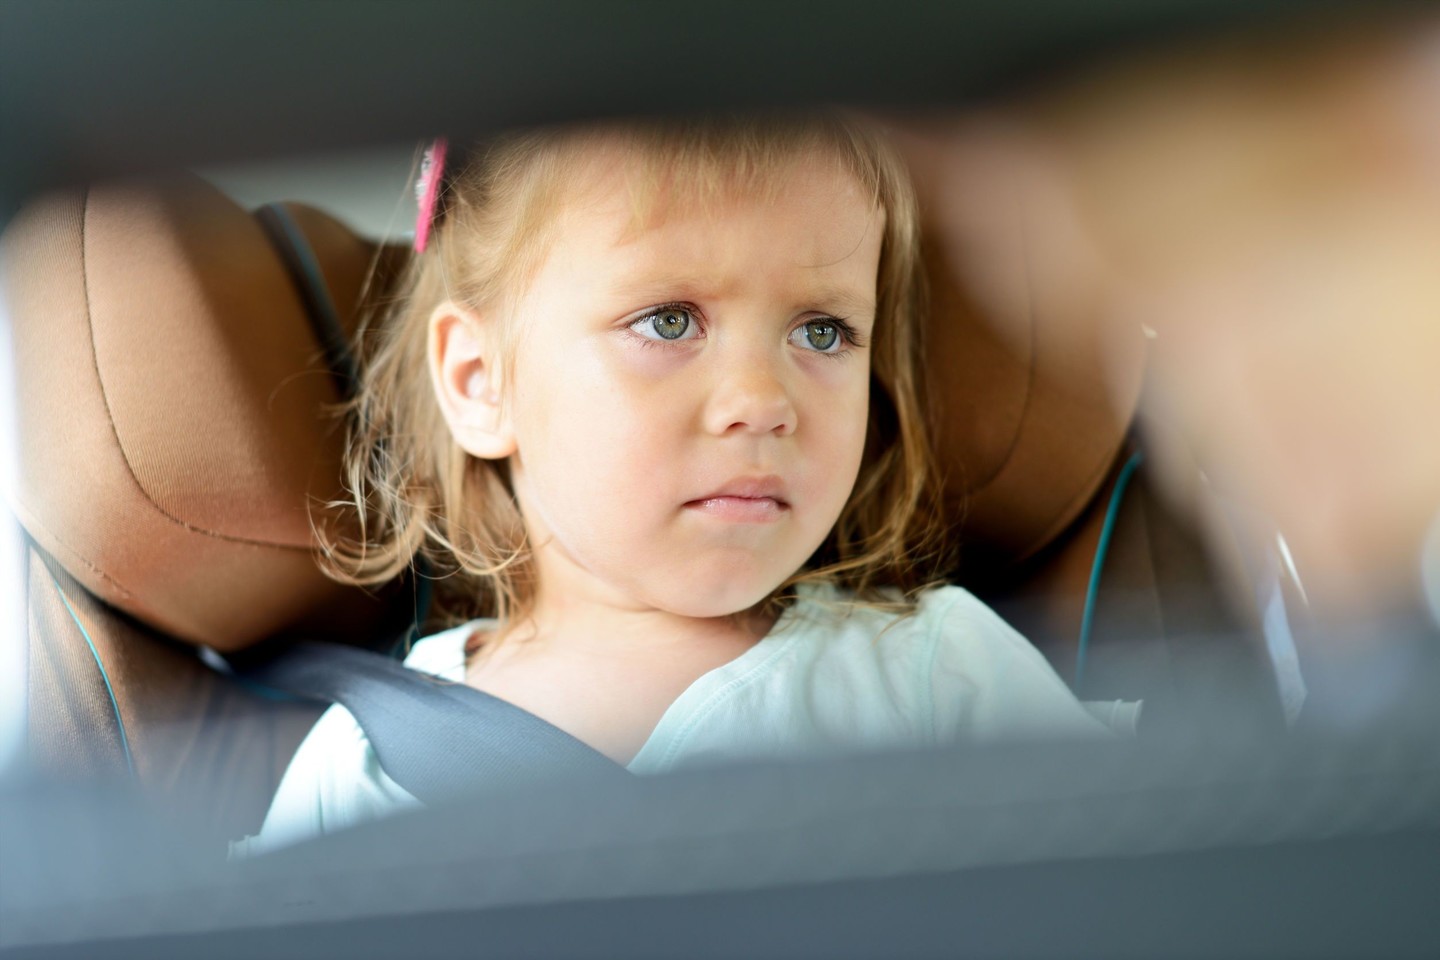  Mažoji Ada automobilyje buvo palikta verkti net 20 minučių, kol tėvai apsižiūrėjo, kad jos nėra viduje su jais ir suvokė savo didžiulę klaidą. <br> 123rf asociatyvi nuotr.